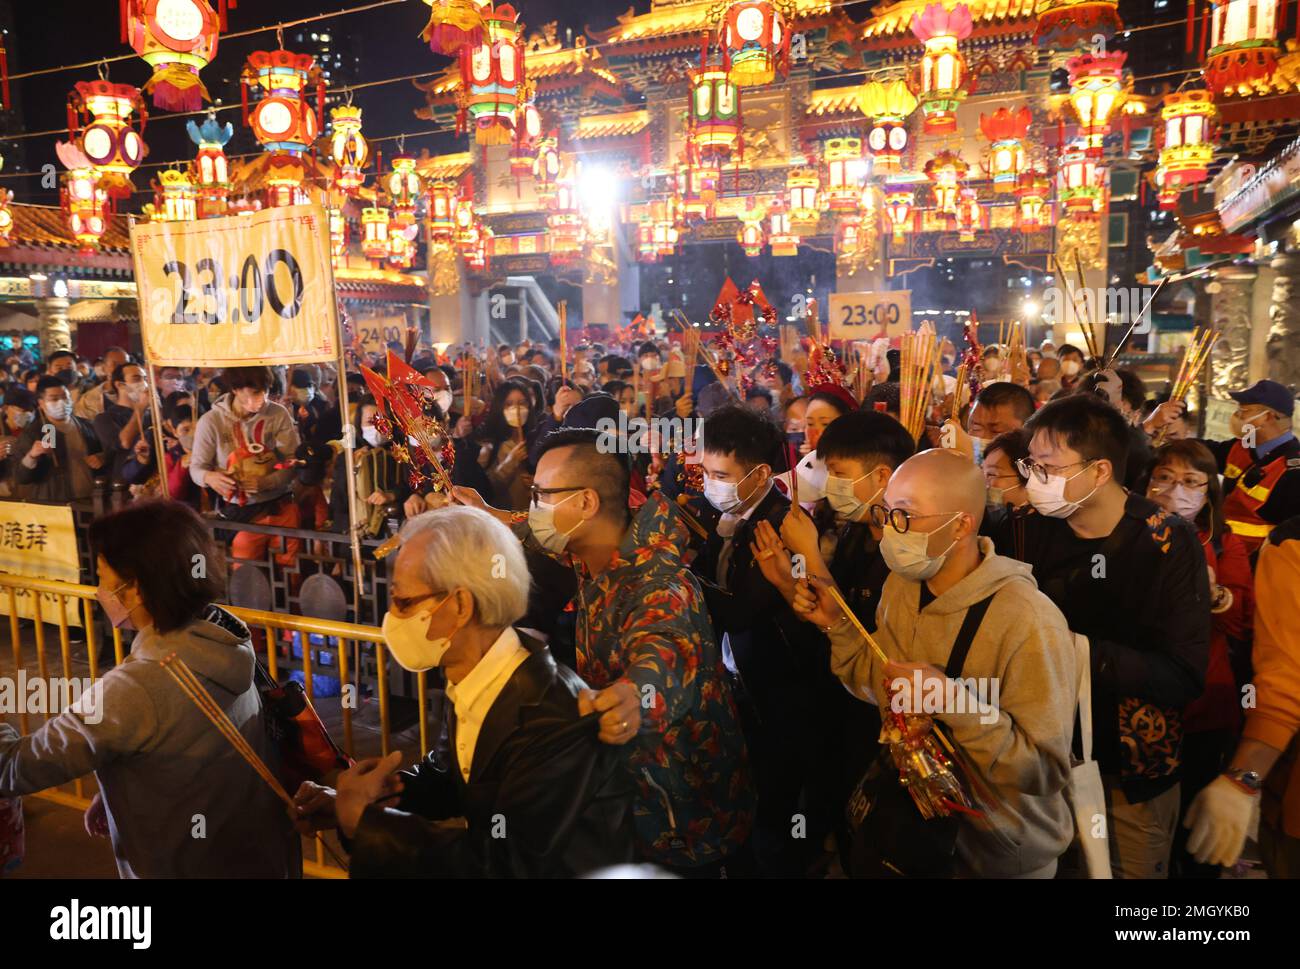 Les adorateurs offrent les premiers bâtons de jos au Temple Wong Tai Sin de la Saint-Sylvestre lunaire, dans le cadre de la célébration de l'année du lapin. 21JAN23 SCMP/Yik Yeung-man Banque D'Images